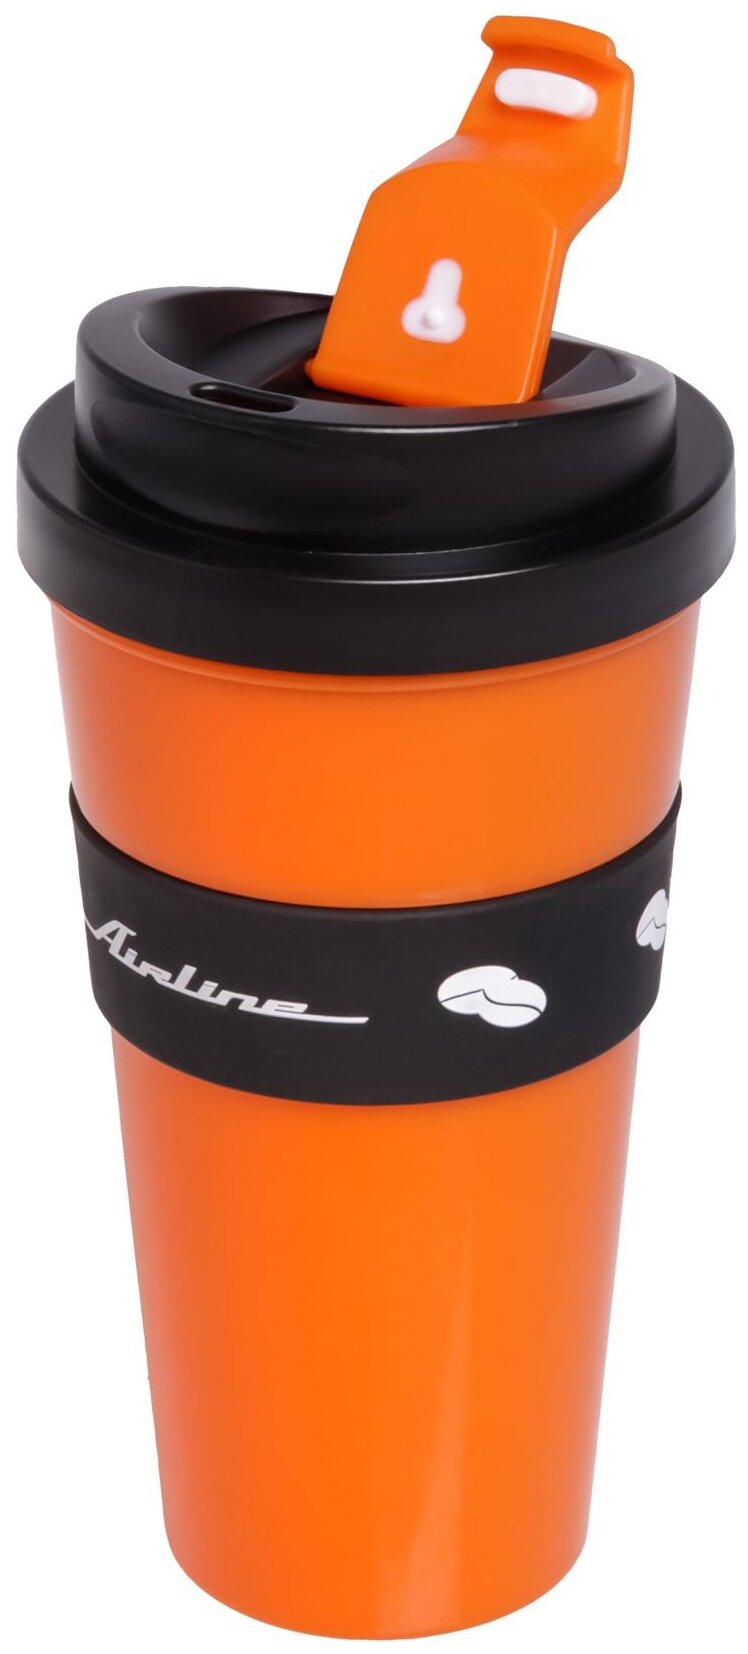 Кружка для кофе и др. напитков, герм. крышка, 430 мл, пластик, черн./оранж. IT-14 AIRLINE